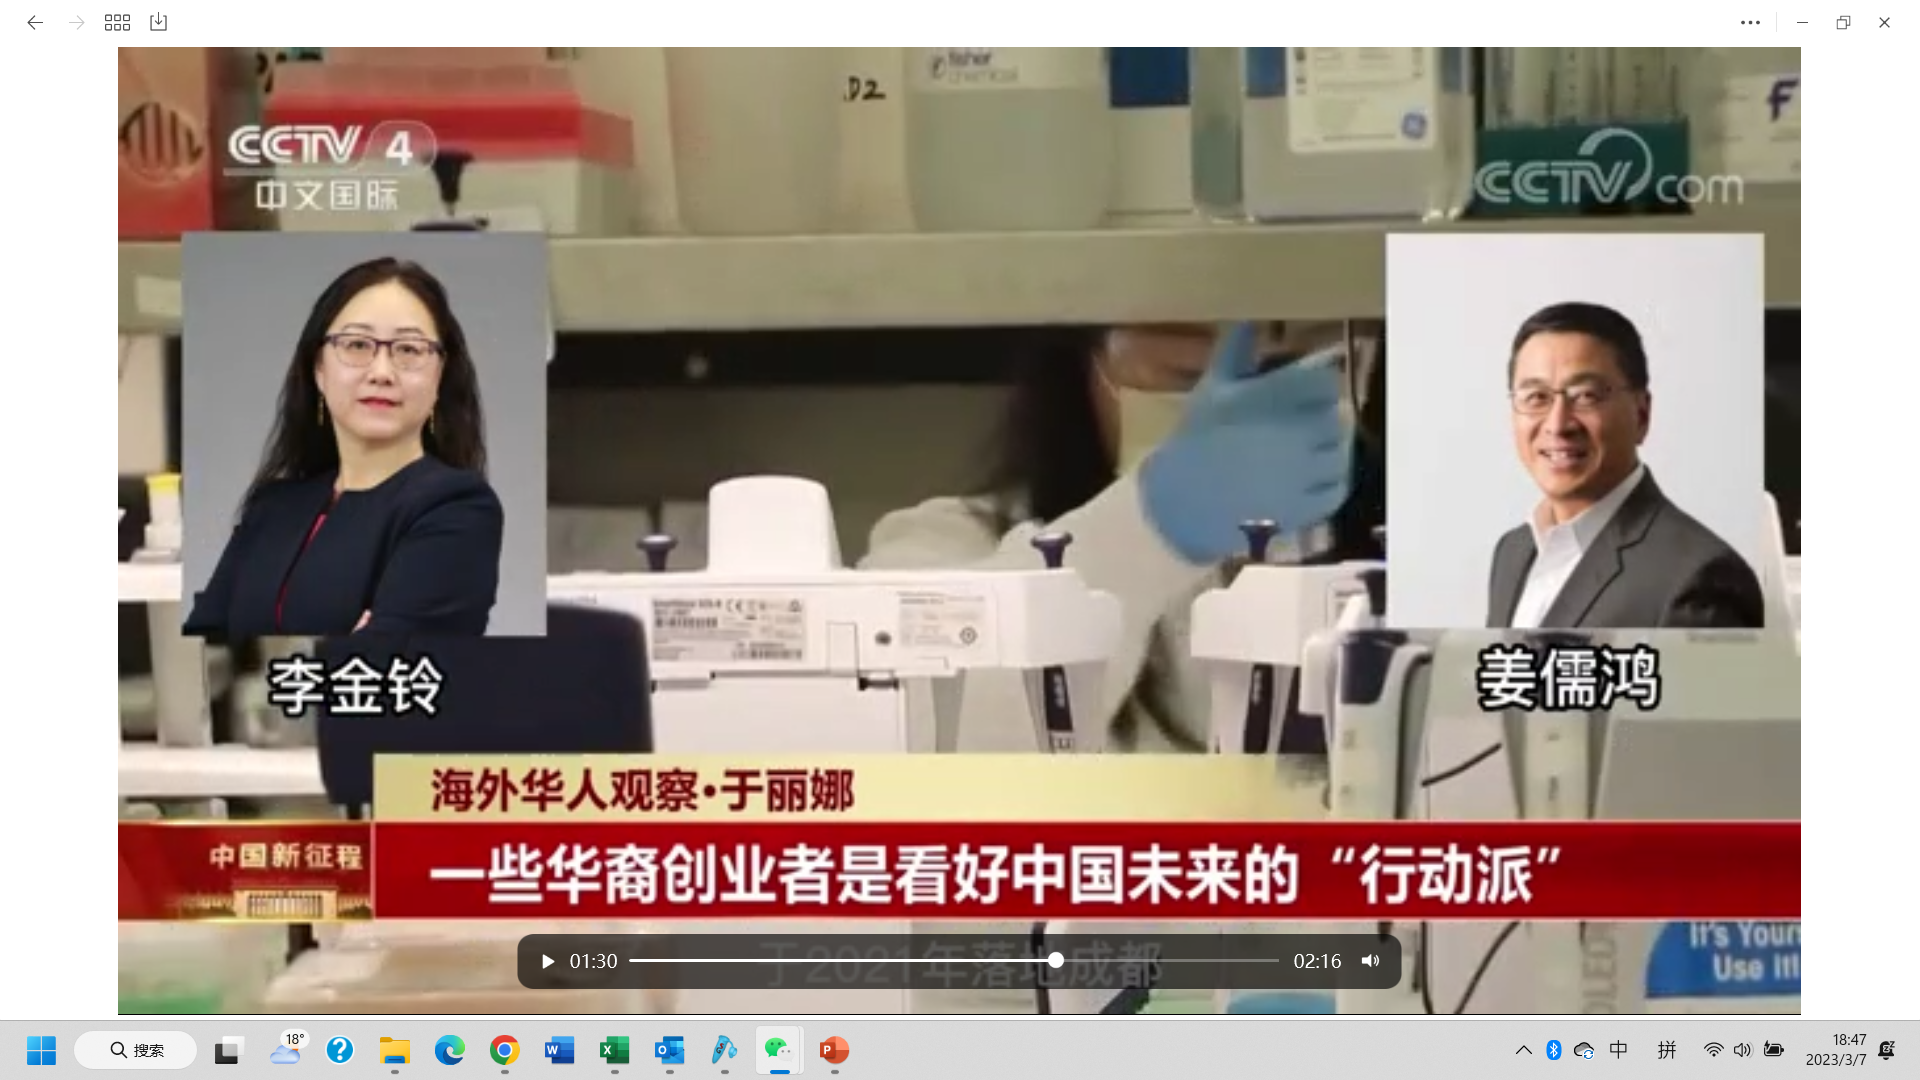 2023年3月6日CCTV4中国新闻两会特别报道：海外华人观察-《硅谷时报》带来独家采访诺奖、图灵奖大咖、及华裔企业家如何看待中国发展的专题报道